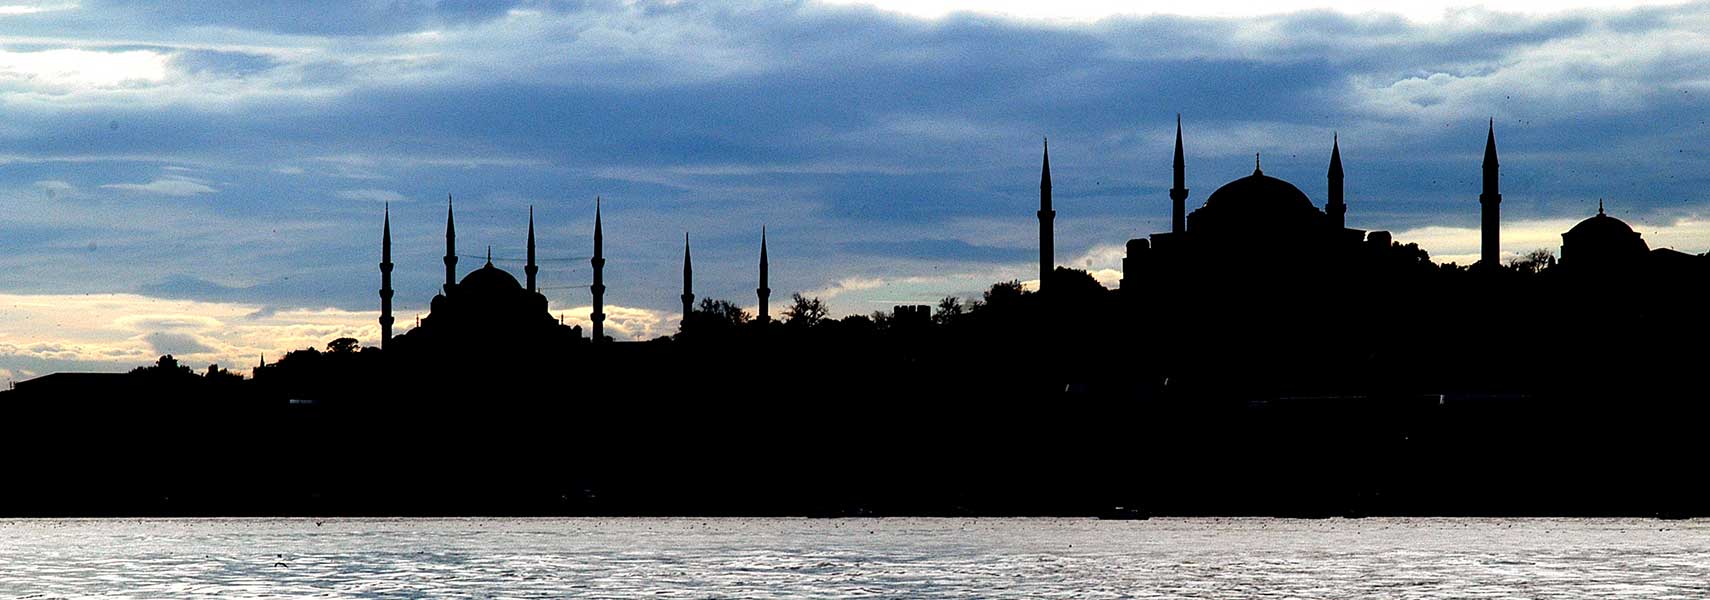 Silhouette of Hagia Sophia and Sultanahmet Mosque, Istanbul